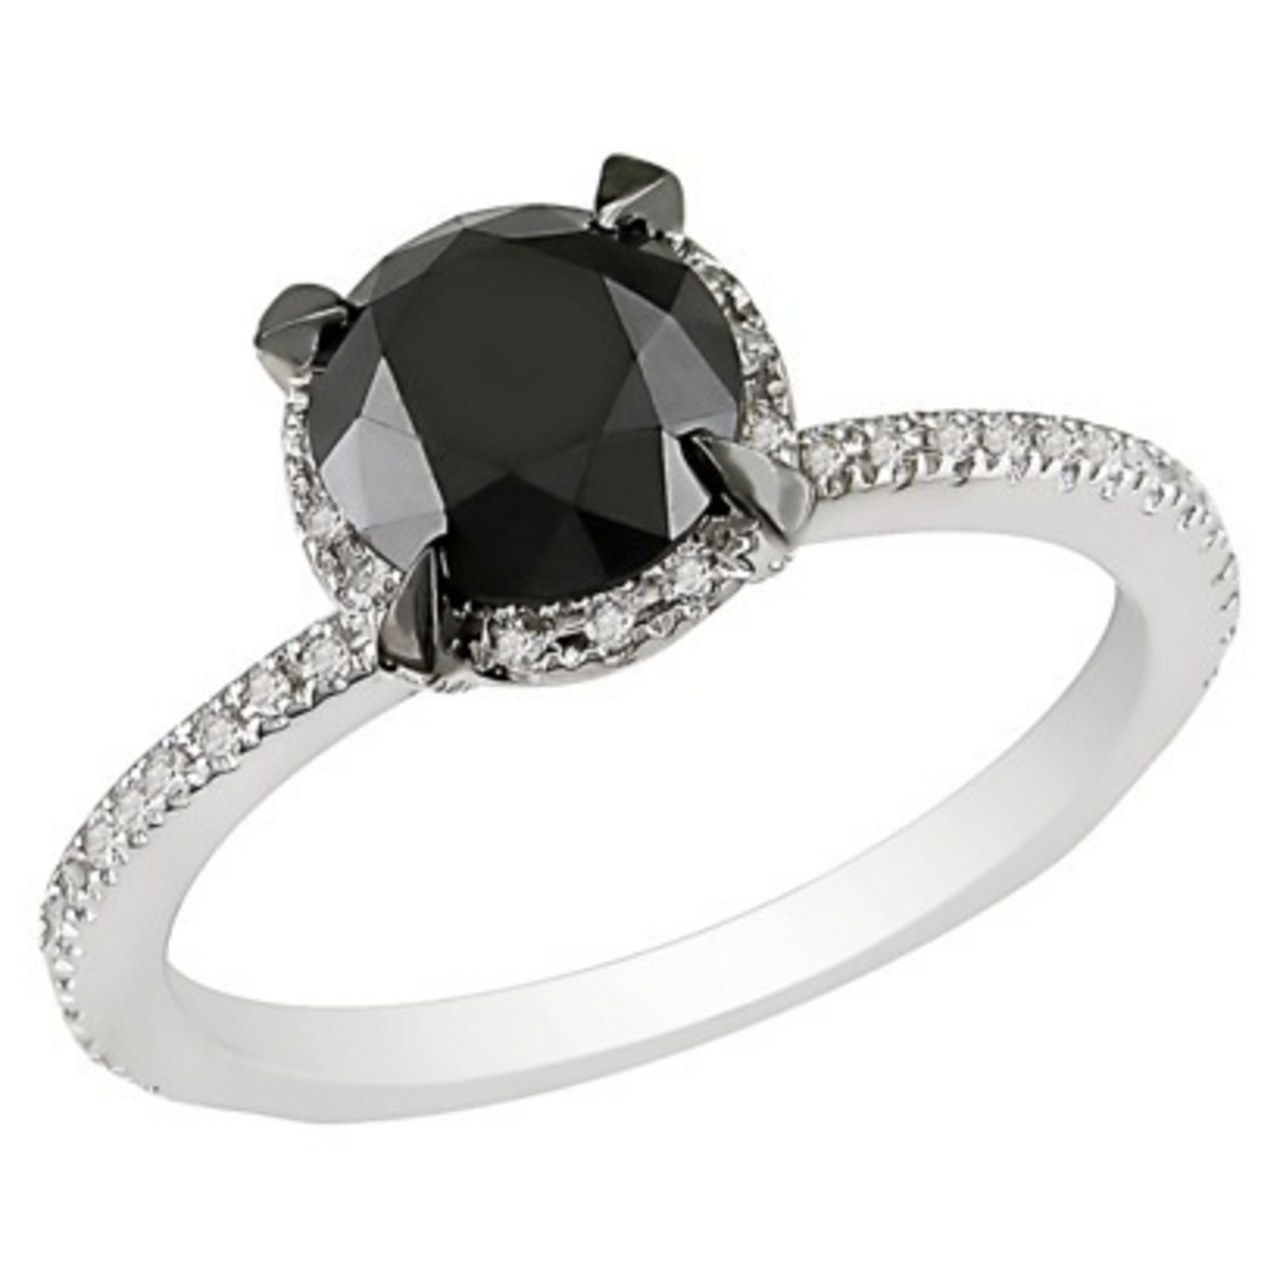 4 engagement rings inspired by kat von d black diamond skull 1218